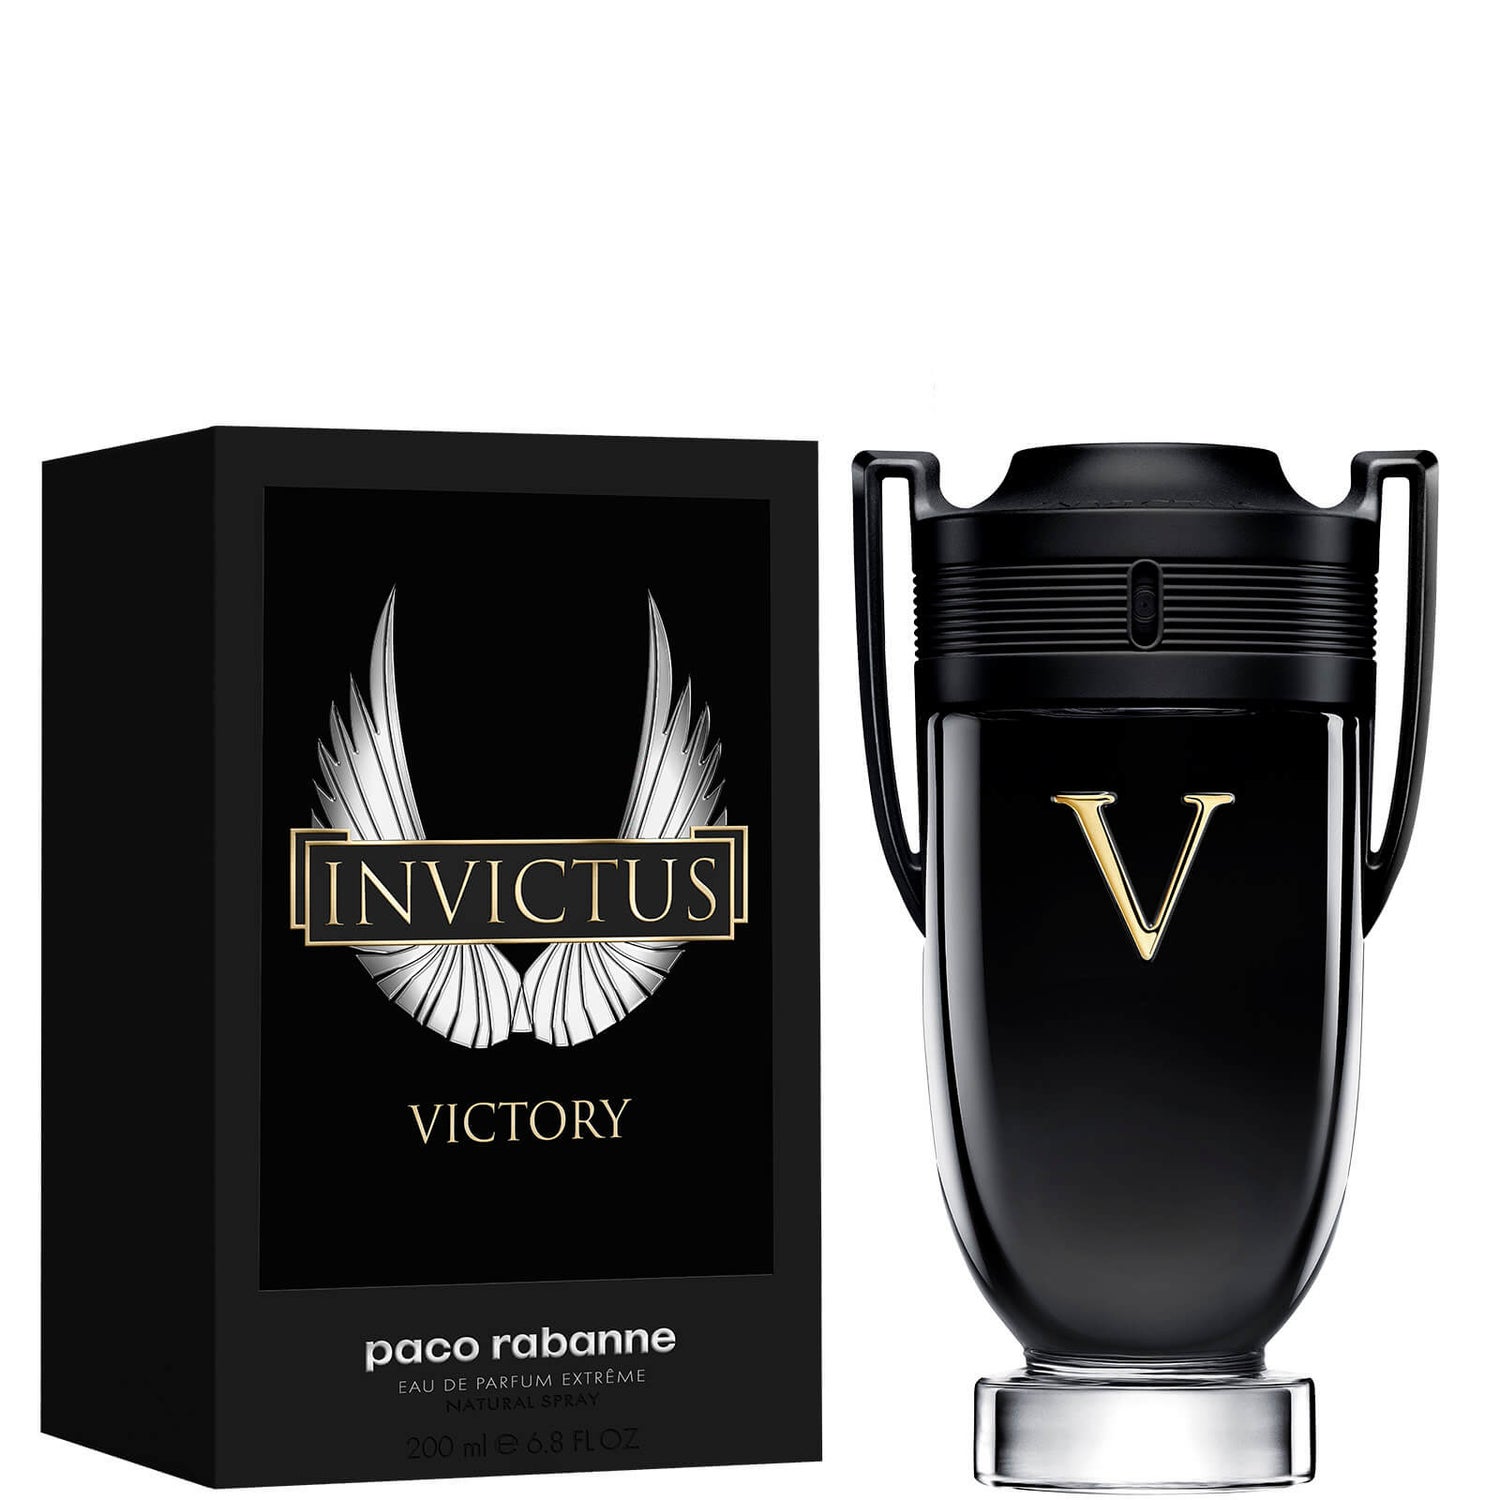 Paco Rabanne Invictus Victory Extreme Eau de Parfum 200ml - LOOKFANTASTIC